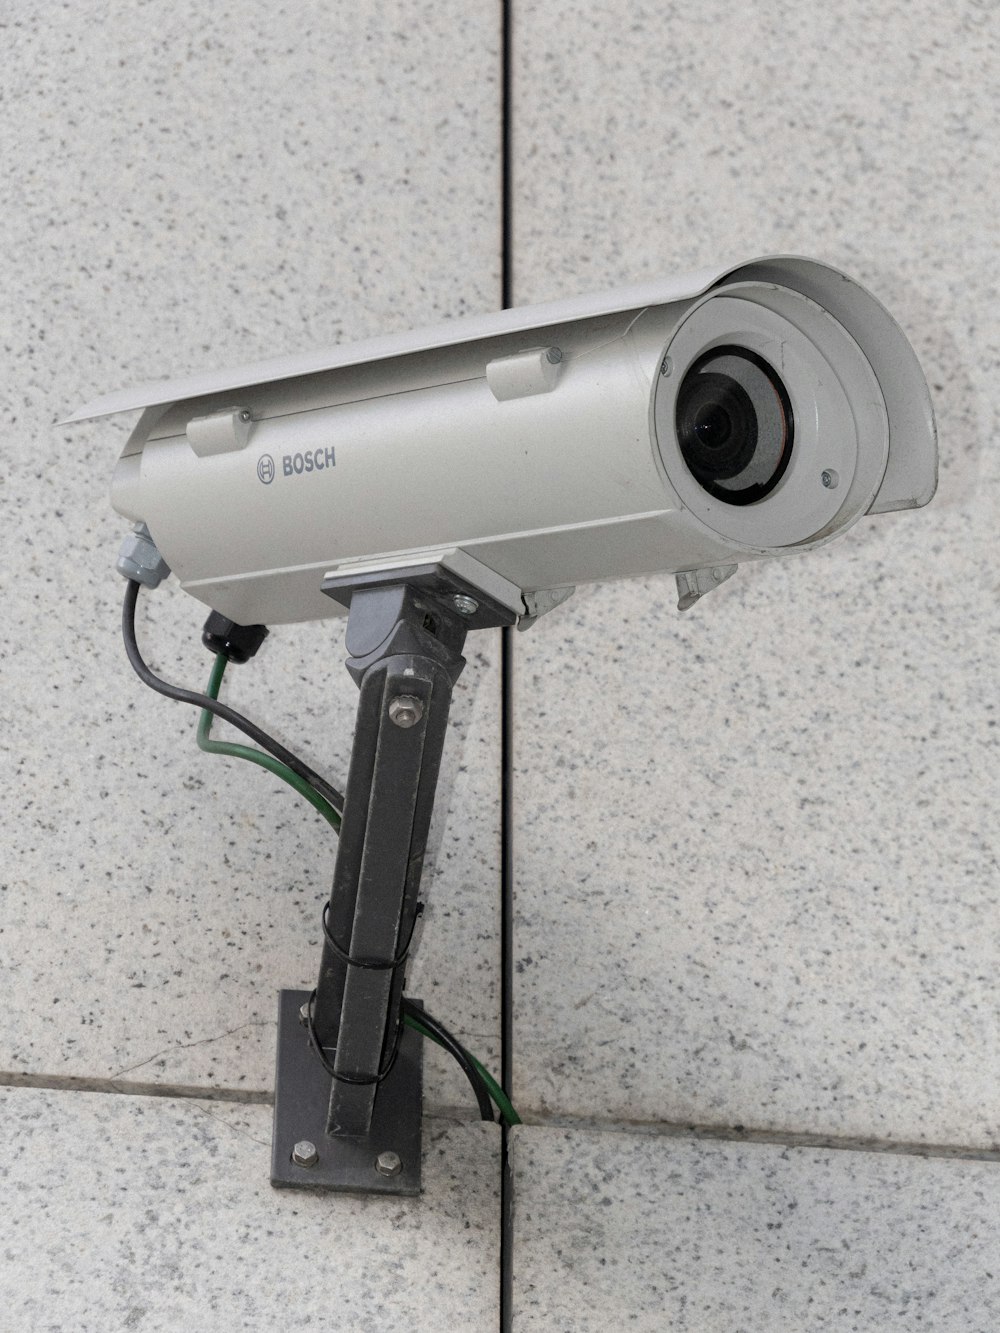 câmera de vigilância Bosch branca